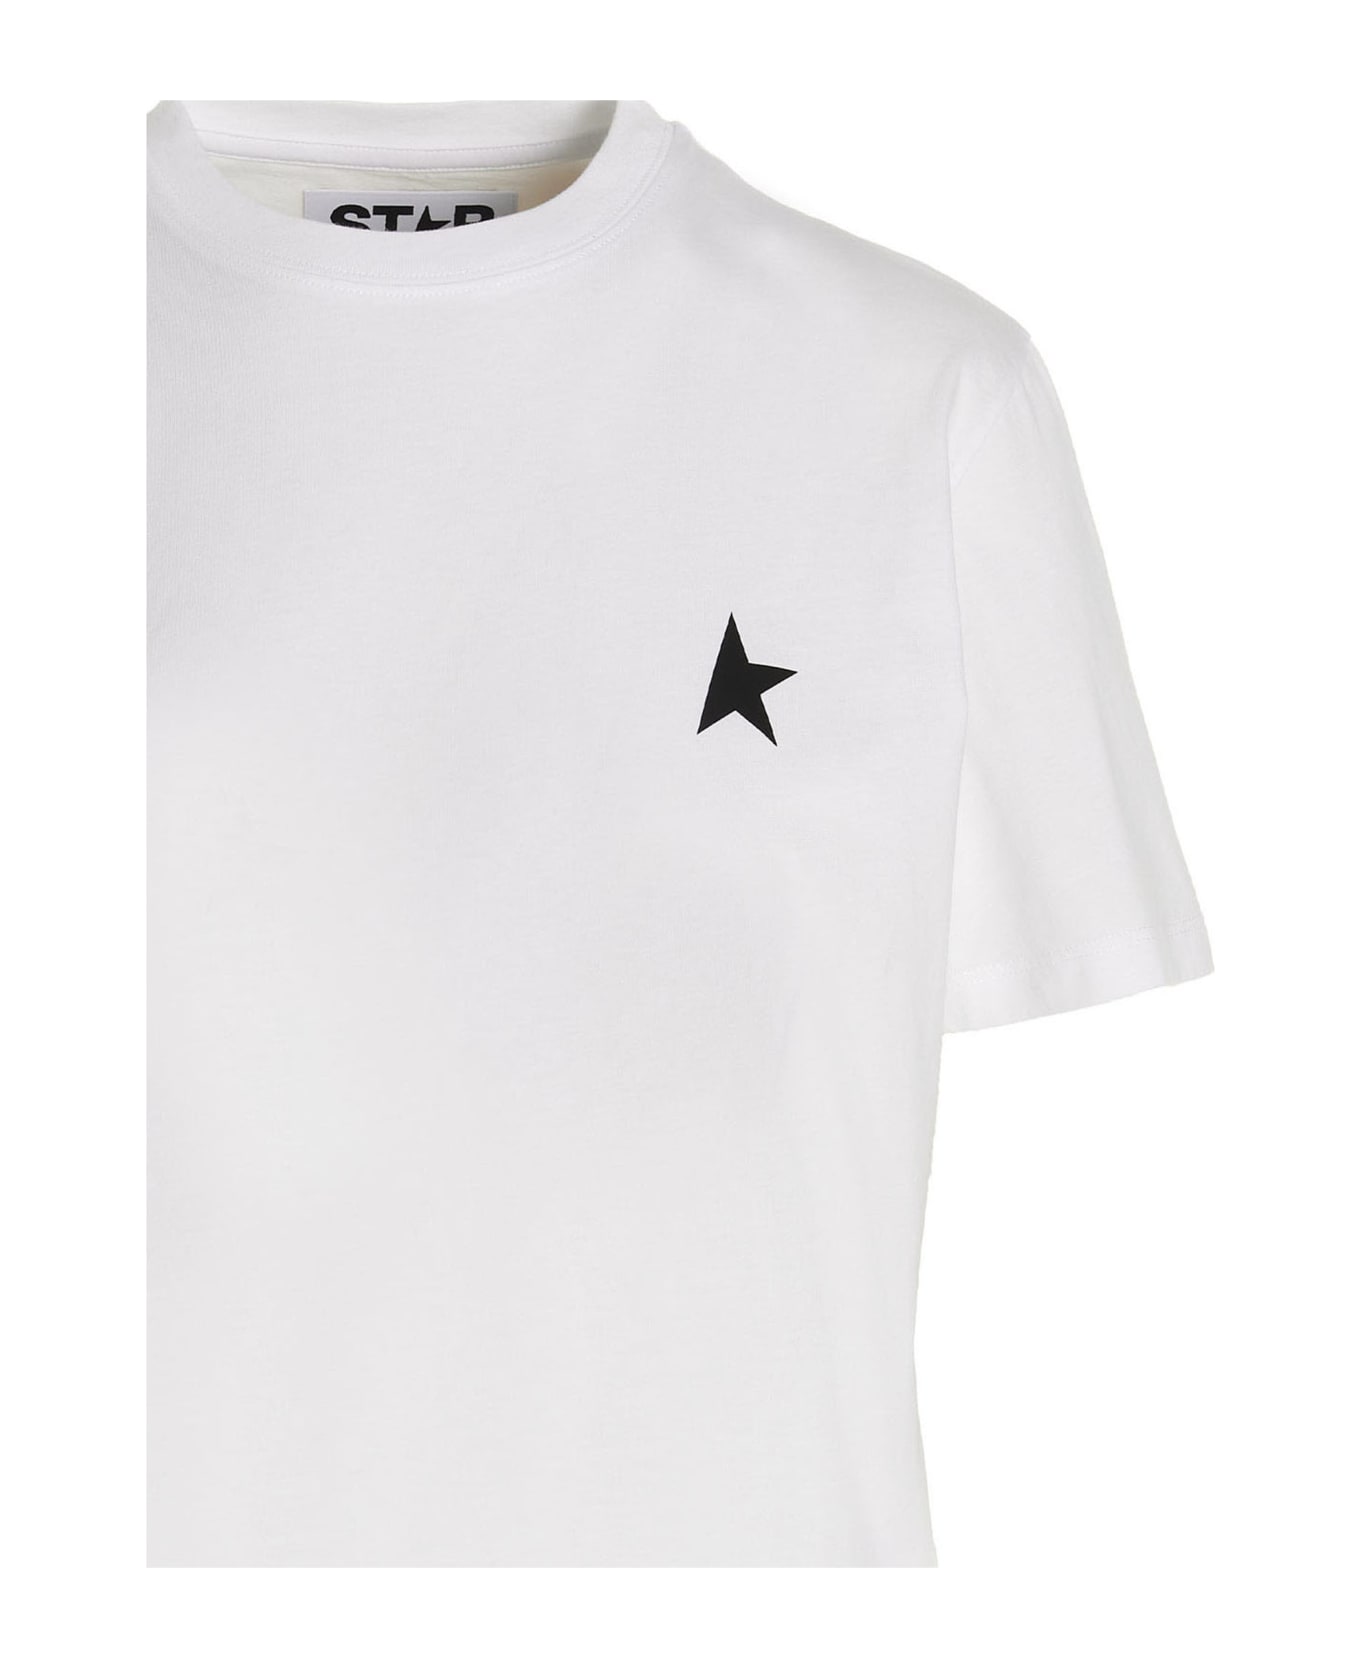 Golden Goose 'star' T-shirt - White